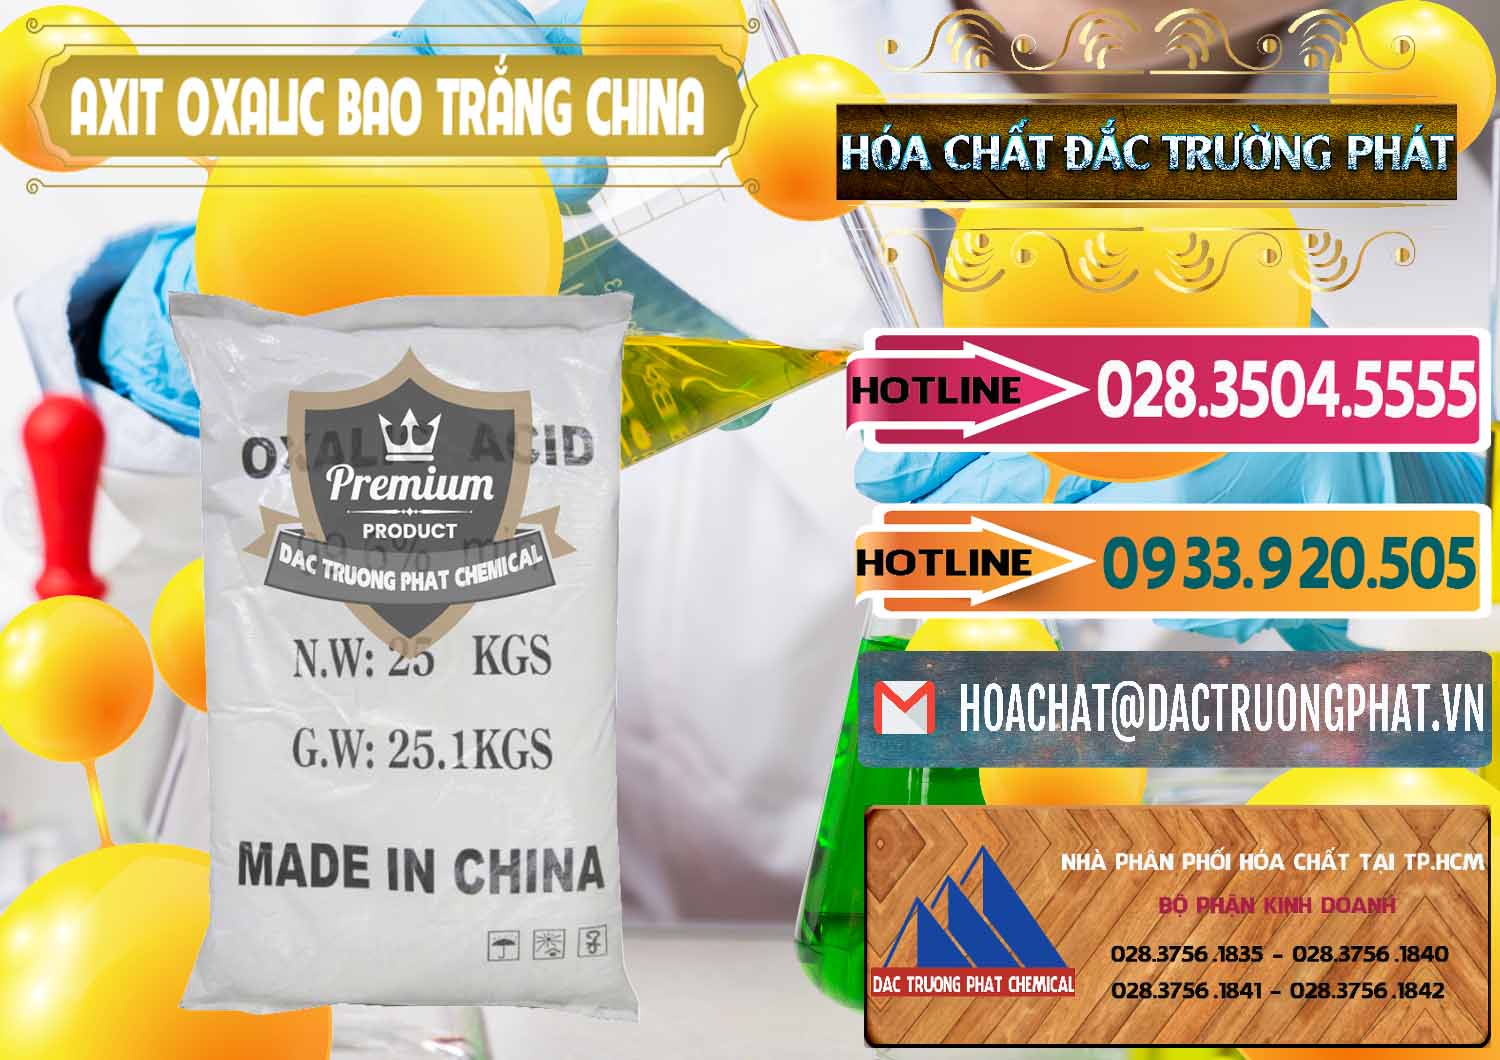 Phân phối và bán Acid Oxalic – Axit Oxalic 99.6% Bao Trắng Trung Quốc China - 0270 - Công ty cung cấp và phân phối hóa chất tại TP.HCM - dactruongphat.vn